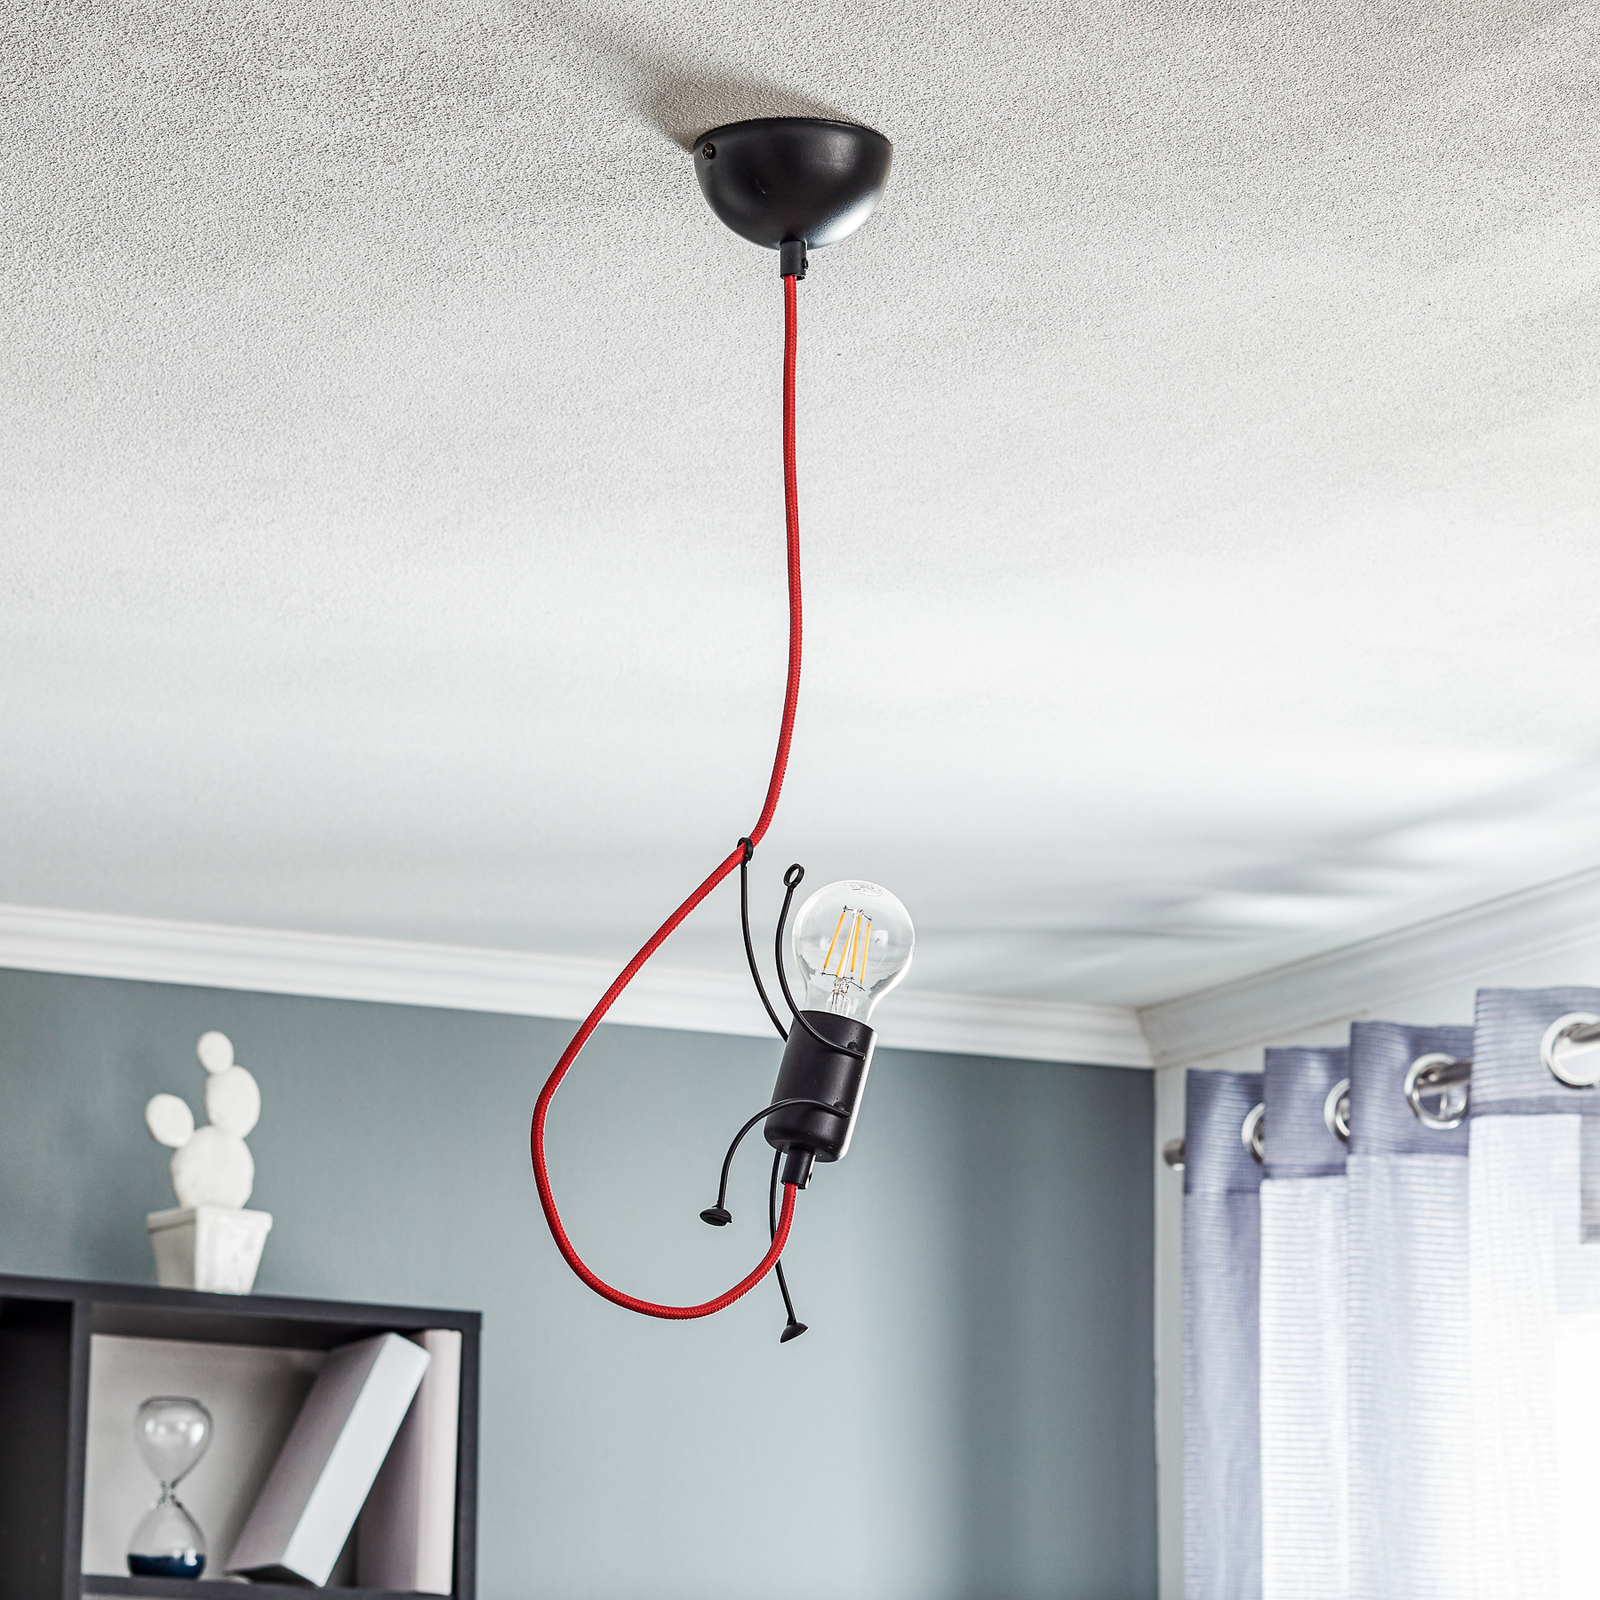 Lijkt op opvolger Oppositie Hanglamp Bobi 1 in zwart, kabel rood, 1-lamp | Lampen24.nl